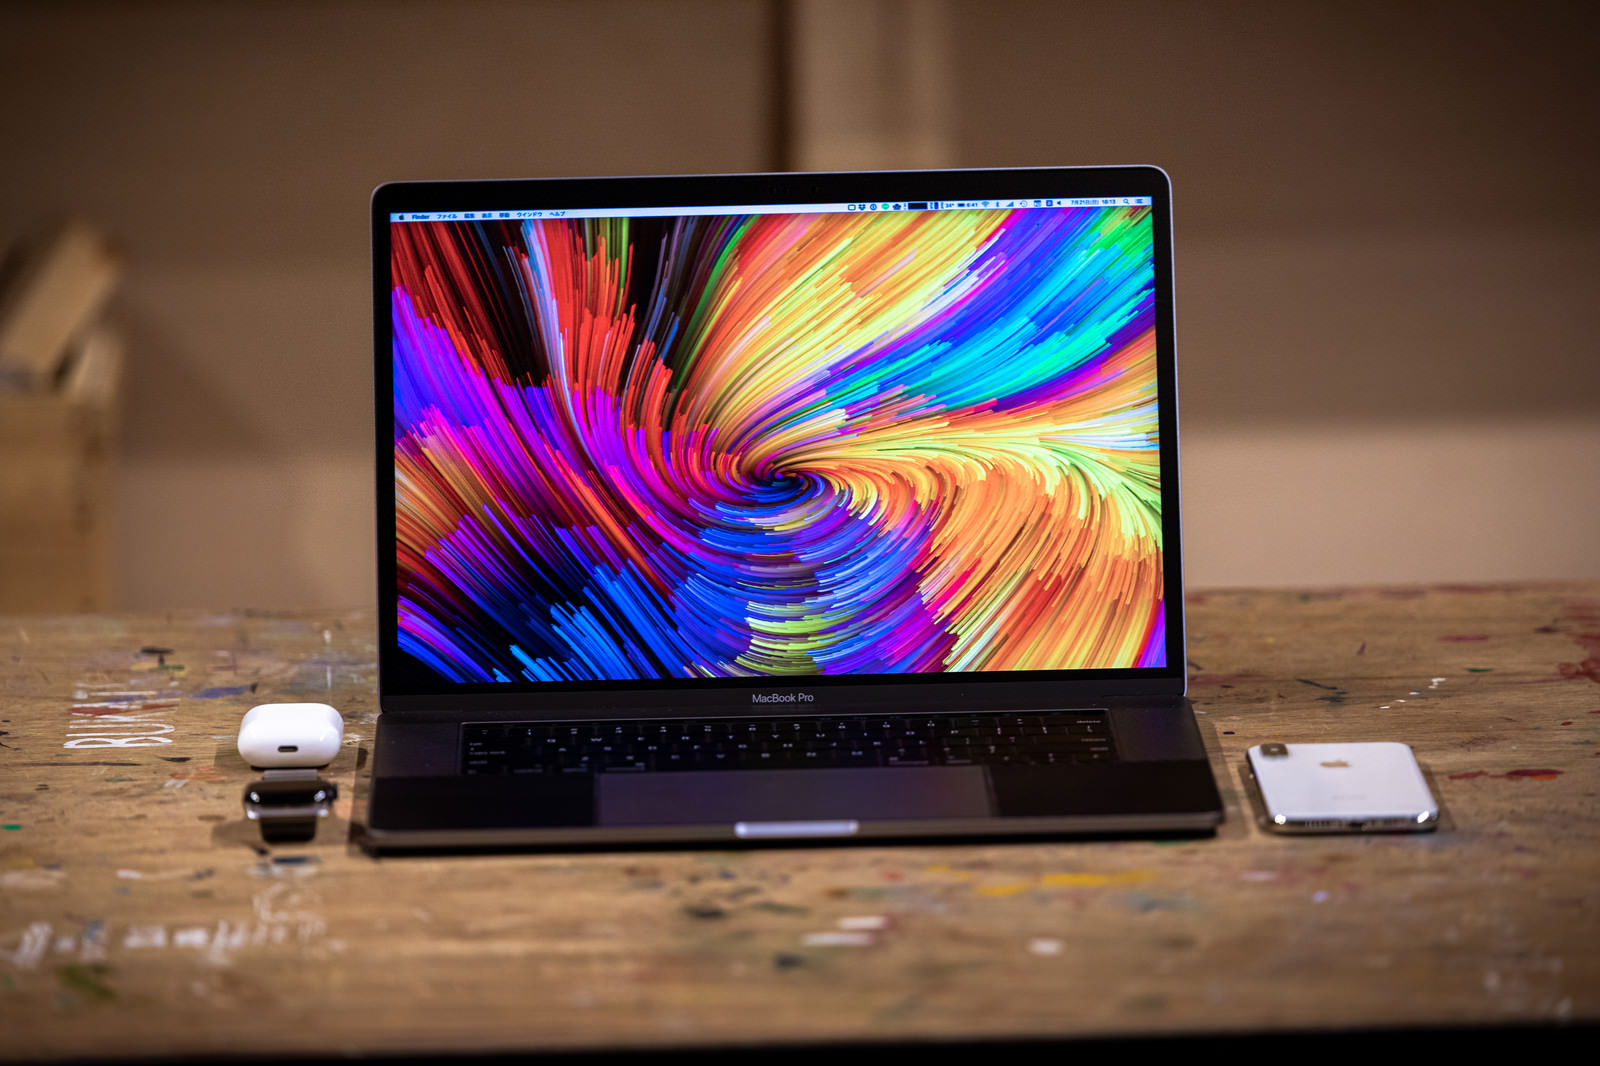 「シャレオツな壁紙のMacBook Proとガジェット」の写真